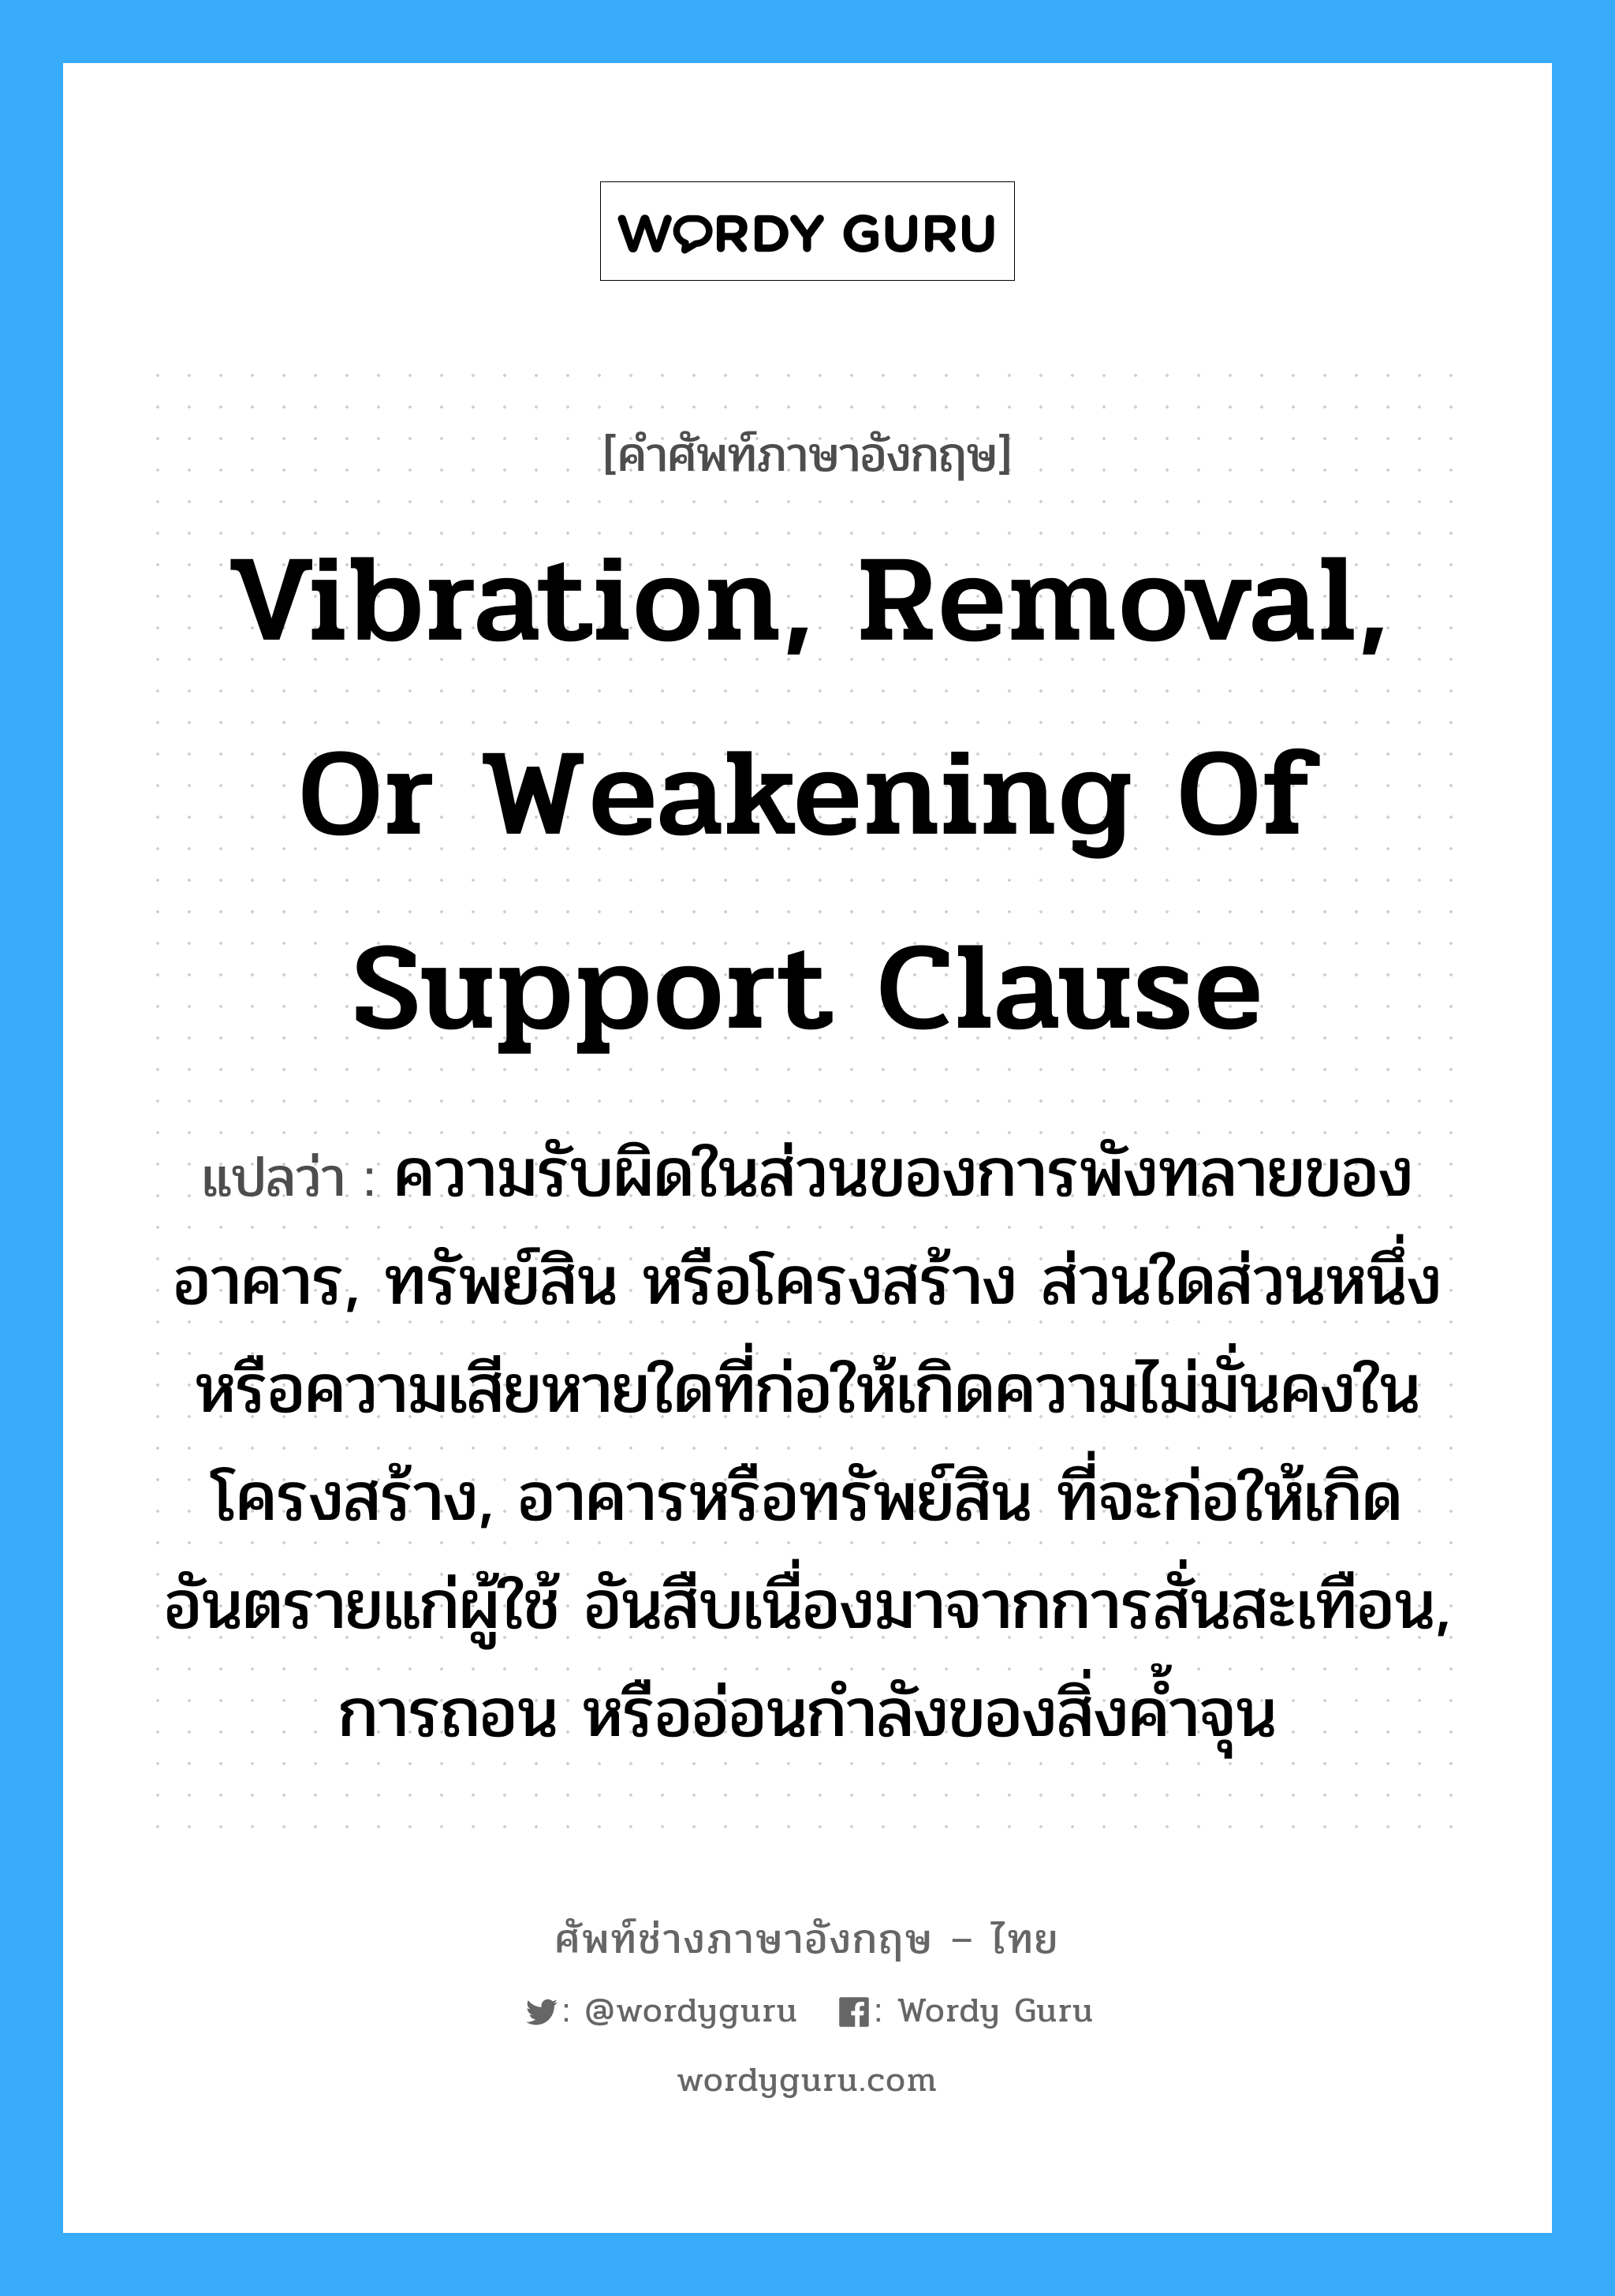 Vibration, Removal, or Weakening of Support Clause แปลว่า?, คำศัพท์ช่างภาษาอังกฤษ - ไทย Vibration, Removal, or Weakening of Support Clause คำศัพท์ภาษาอังกฤษ Vibration, Removal, or Weakening of Support Clause แปลว่า ความรับผิดในส่วนของการพังทลายของอาคาร, ทรัพย์สิน หรือโครงสร้าง ส่วนใดส่วนหนึ่ง หรือความเสียหายใดที่ก่อให้เกิดความไม่มั่นคงในโครงสร้าง, อาคารหรือทรัพย์สิน ที่จะก่อให้เกิดอันตรายแก่ผู้ใช้ อันสืบเนื่องมาจากการสั่นสะเทือน, การถอน หรืออ่อนกำลังของสิ่งค้ำจุน